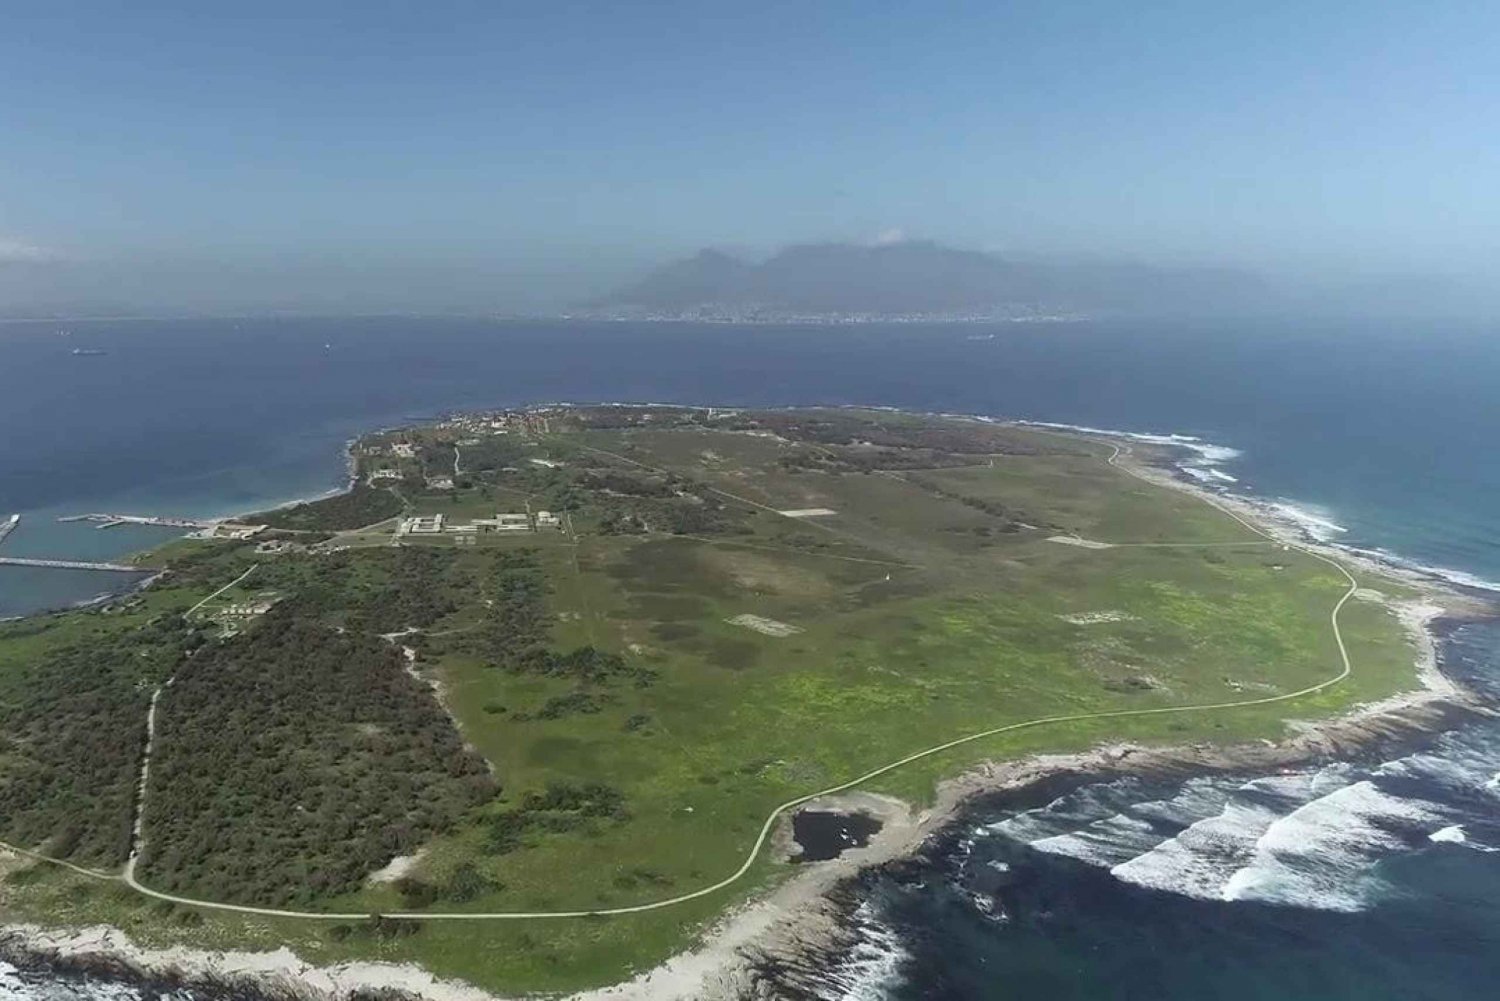 Halvdagstur till Robben Island med privat transfer tur och retur